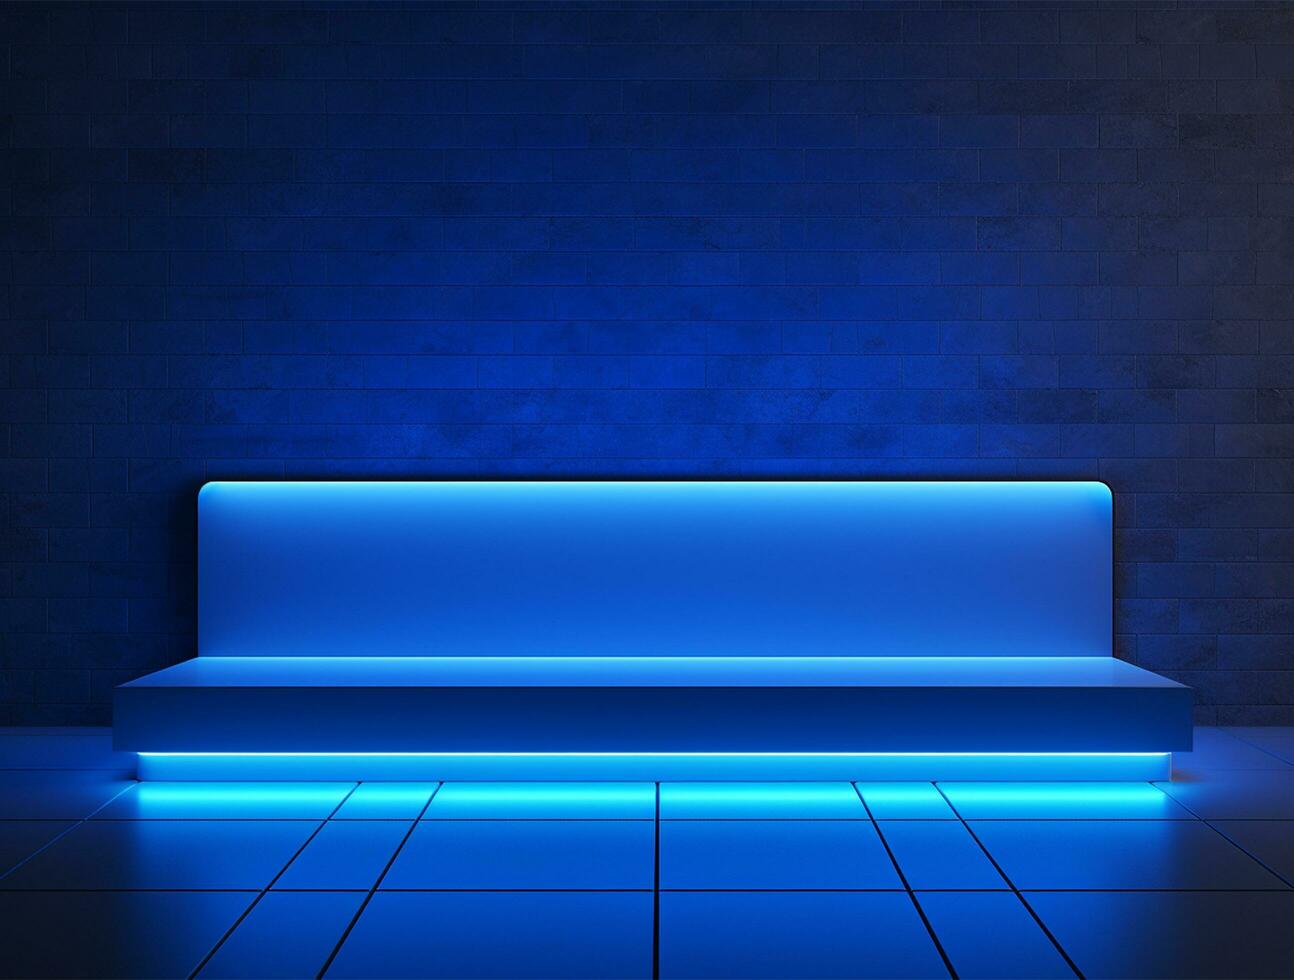 esvaziar azul néon luz moderno interior parede fundo frente Visão ai gerado foto